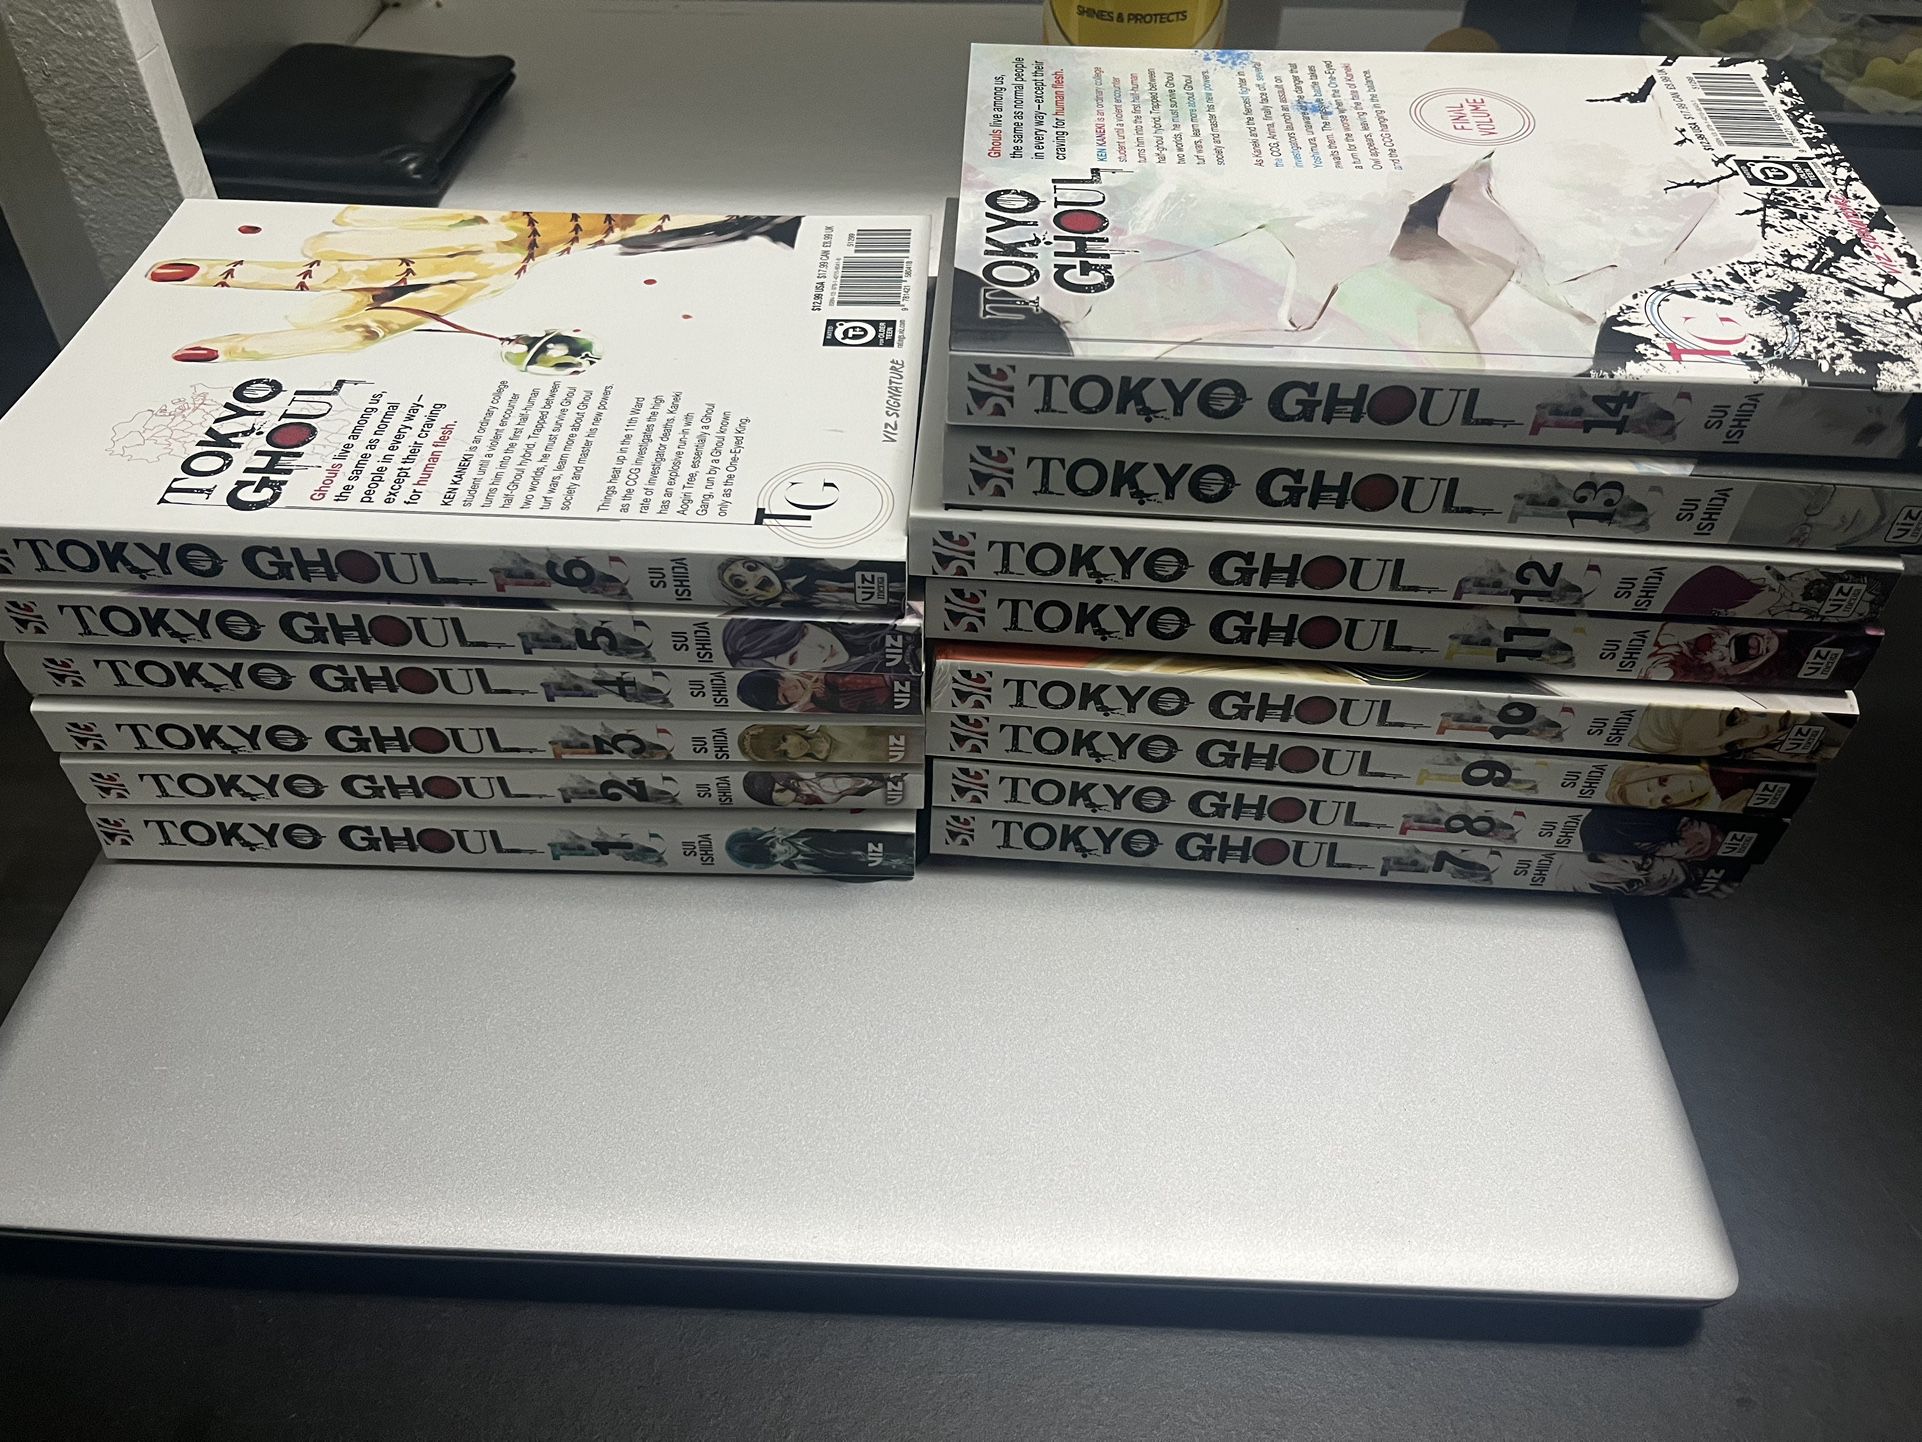 Tokyo Ghoul Manga And Free My Hero Academia Manga